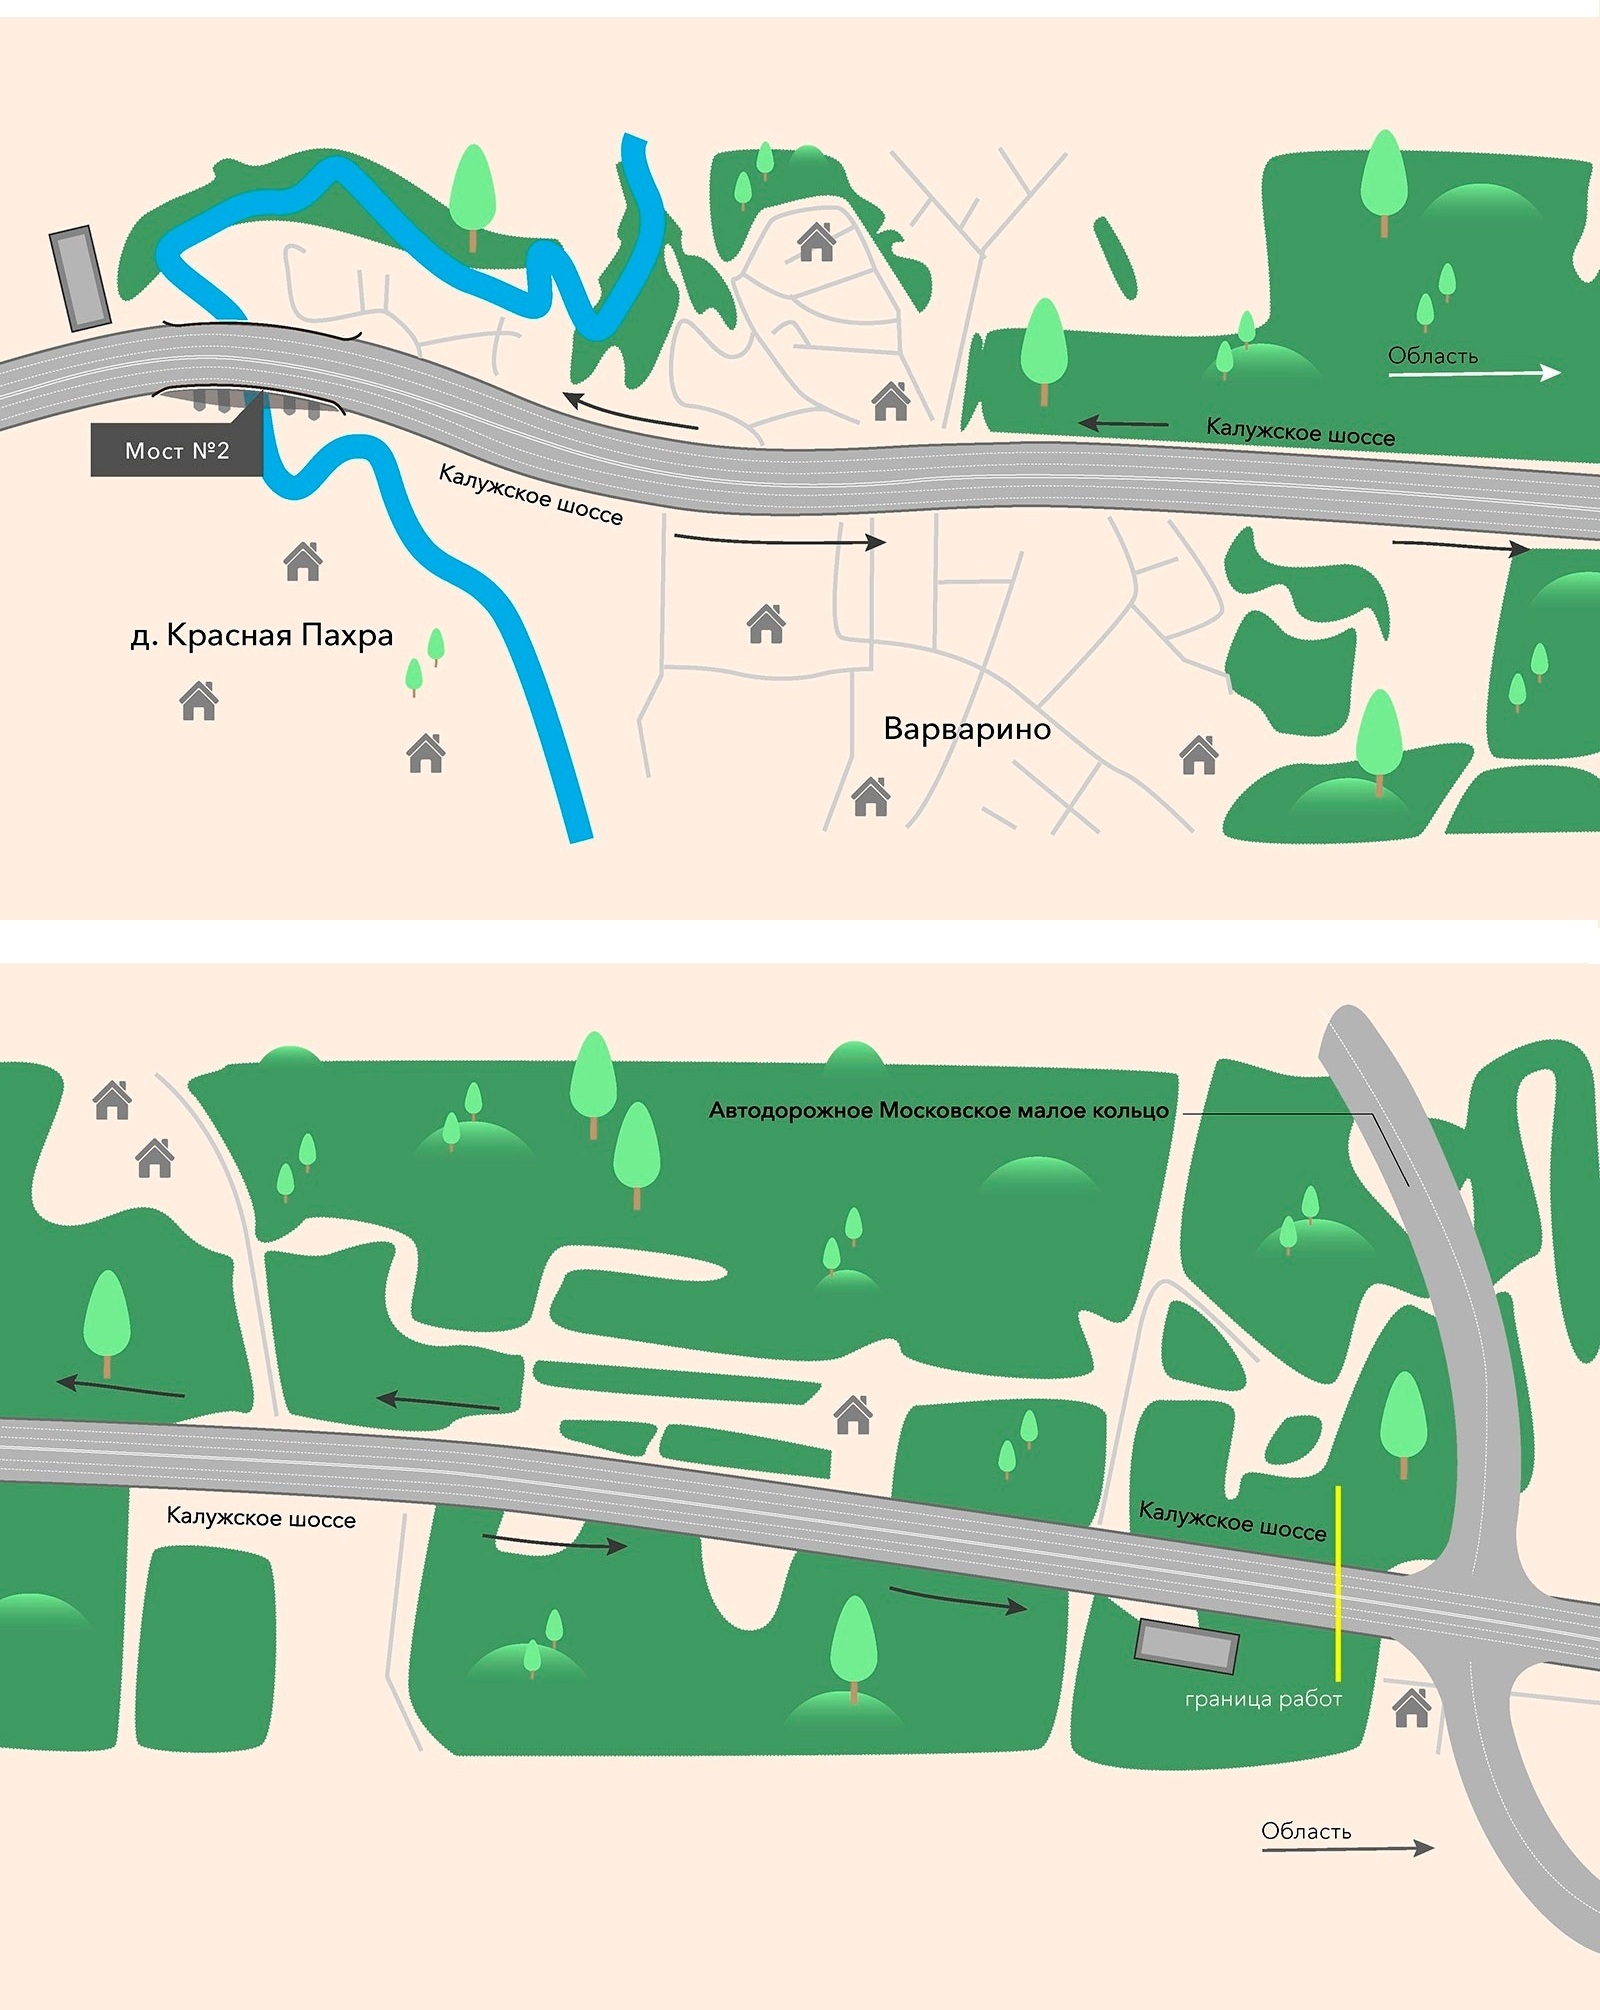 Второй этап реконструкции Калужского шоссе - в инфографике